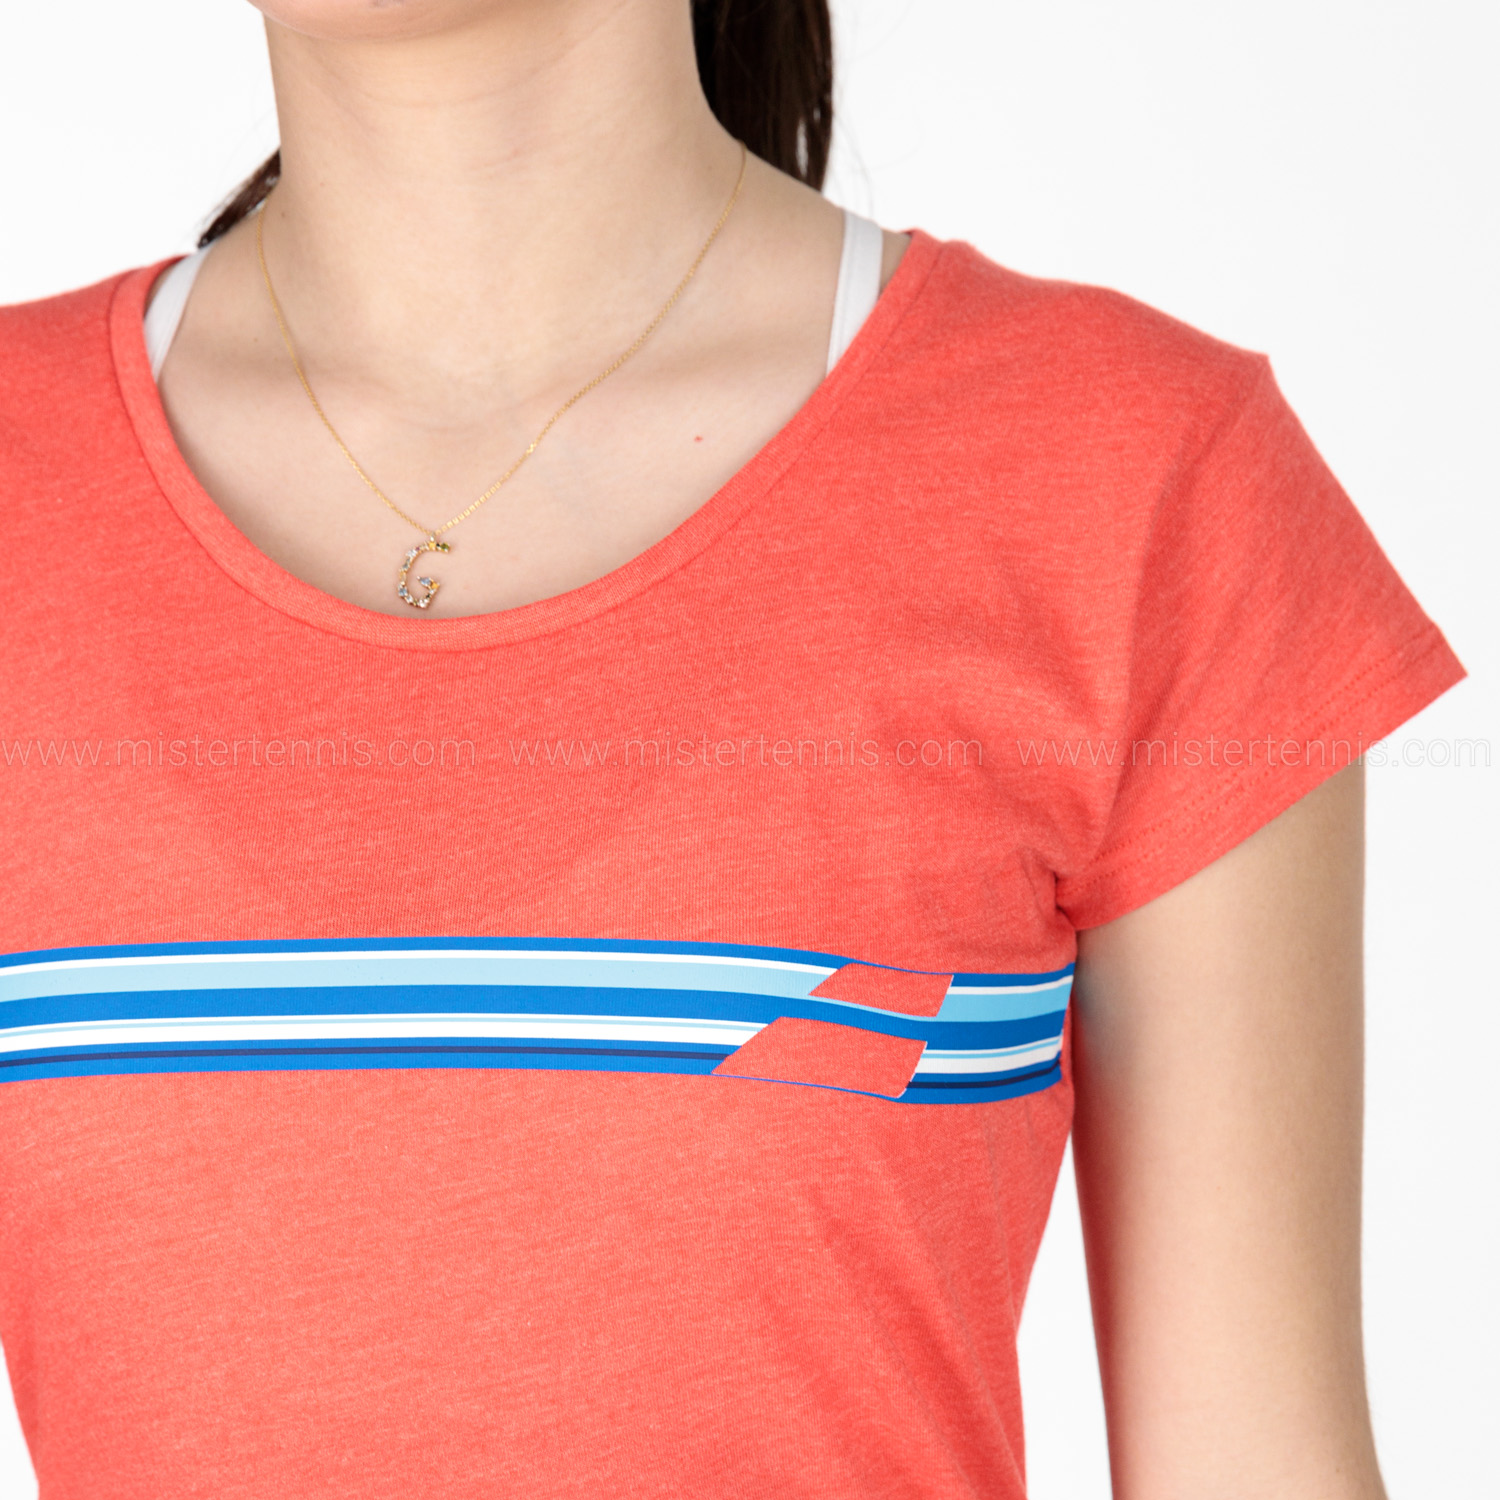 Babolat Exercise Stripes Camiseta - Poppy Red Heather